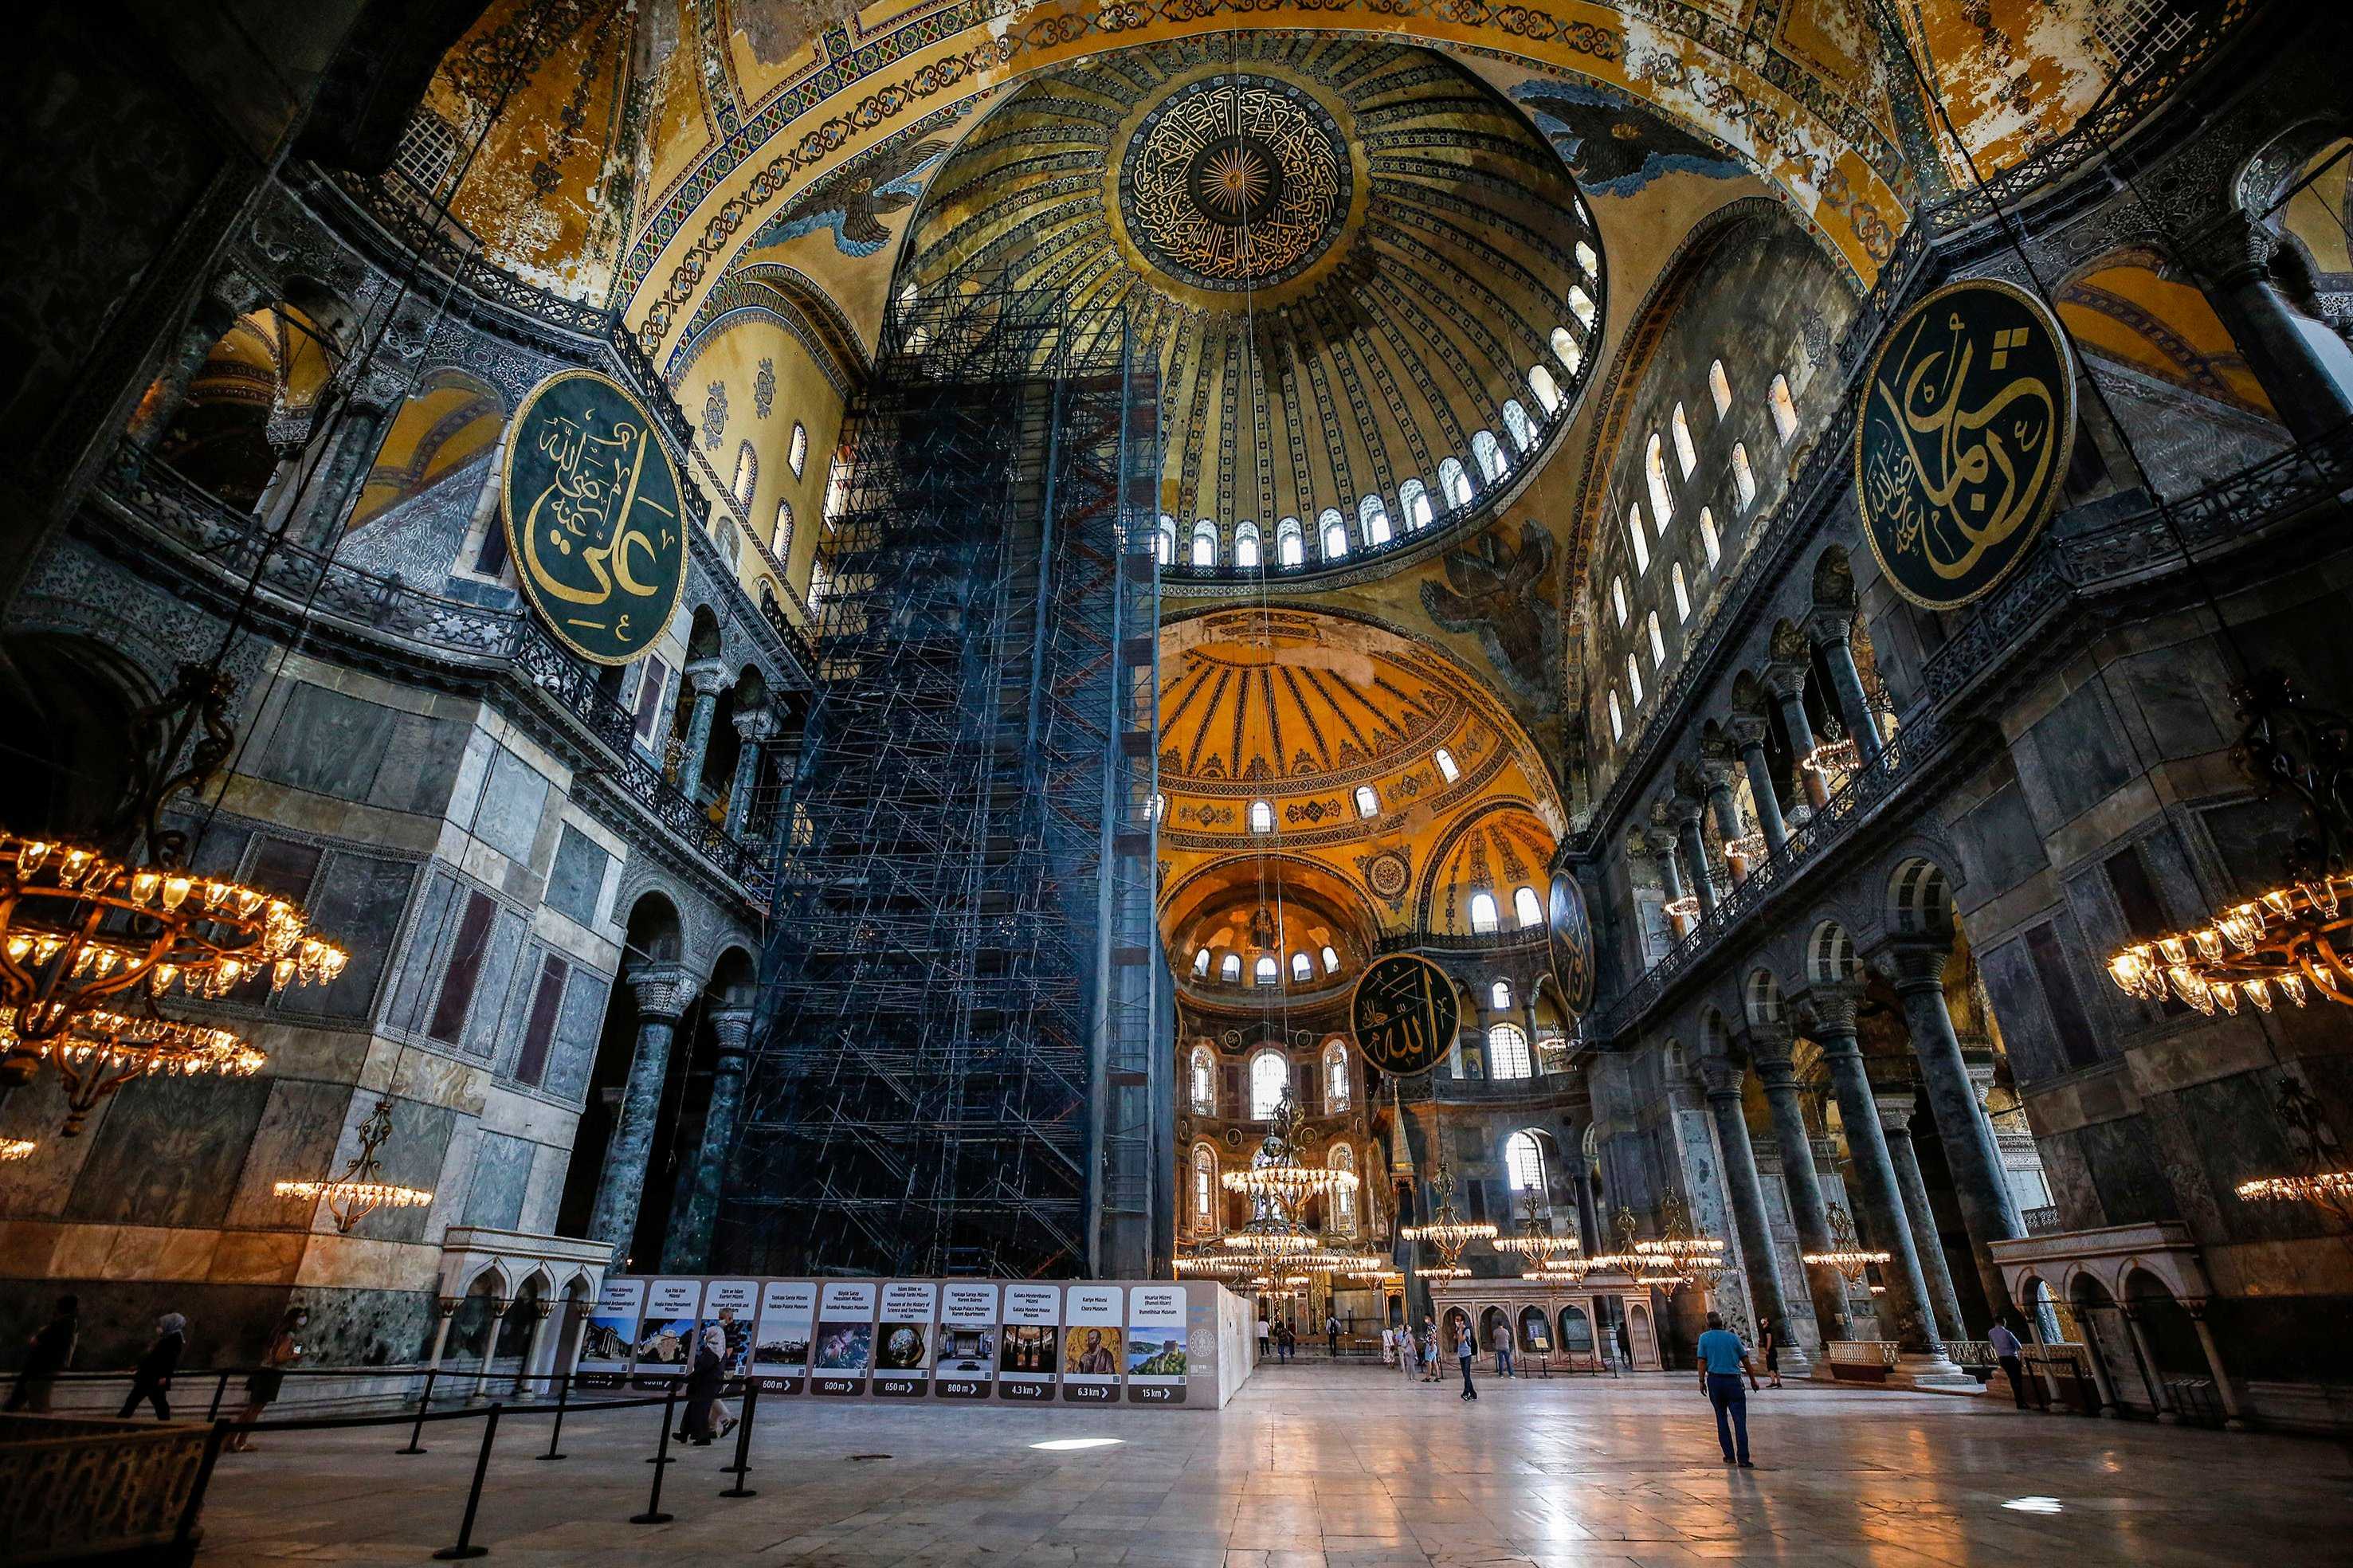 Айя софия, стамбул или собор святой софии в константинополе: церковь или мечеть